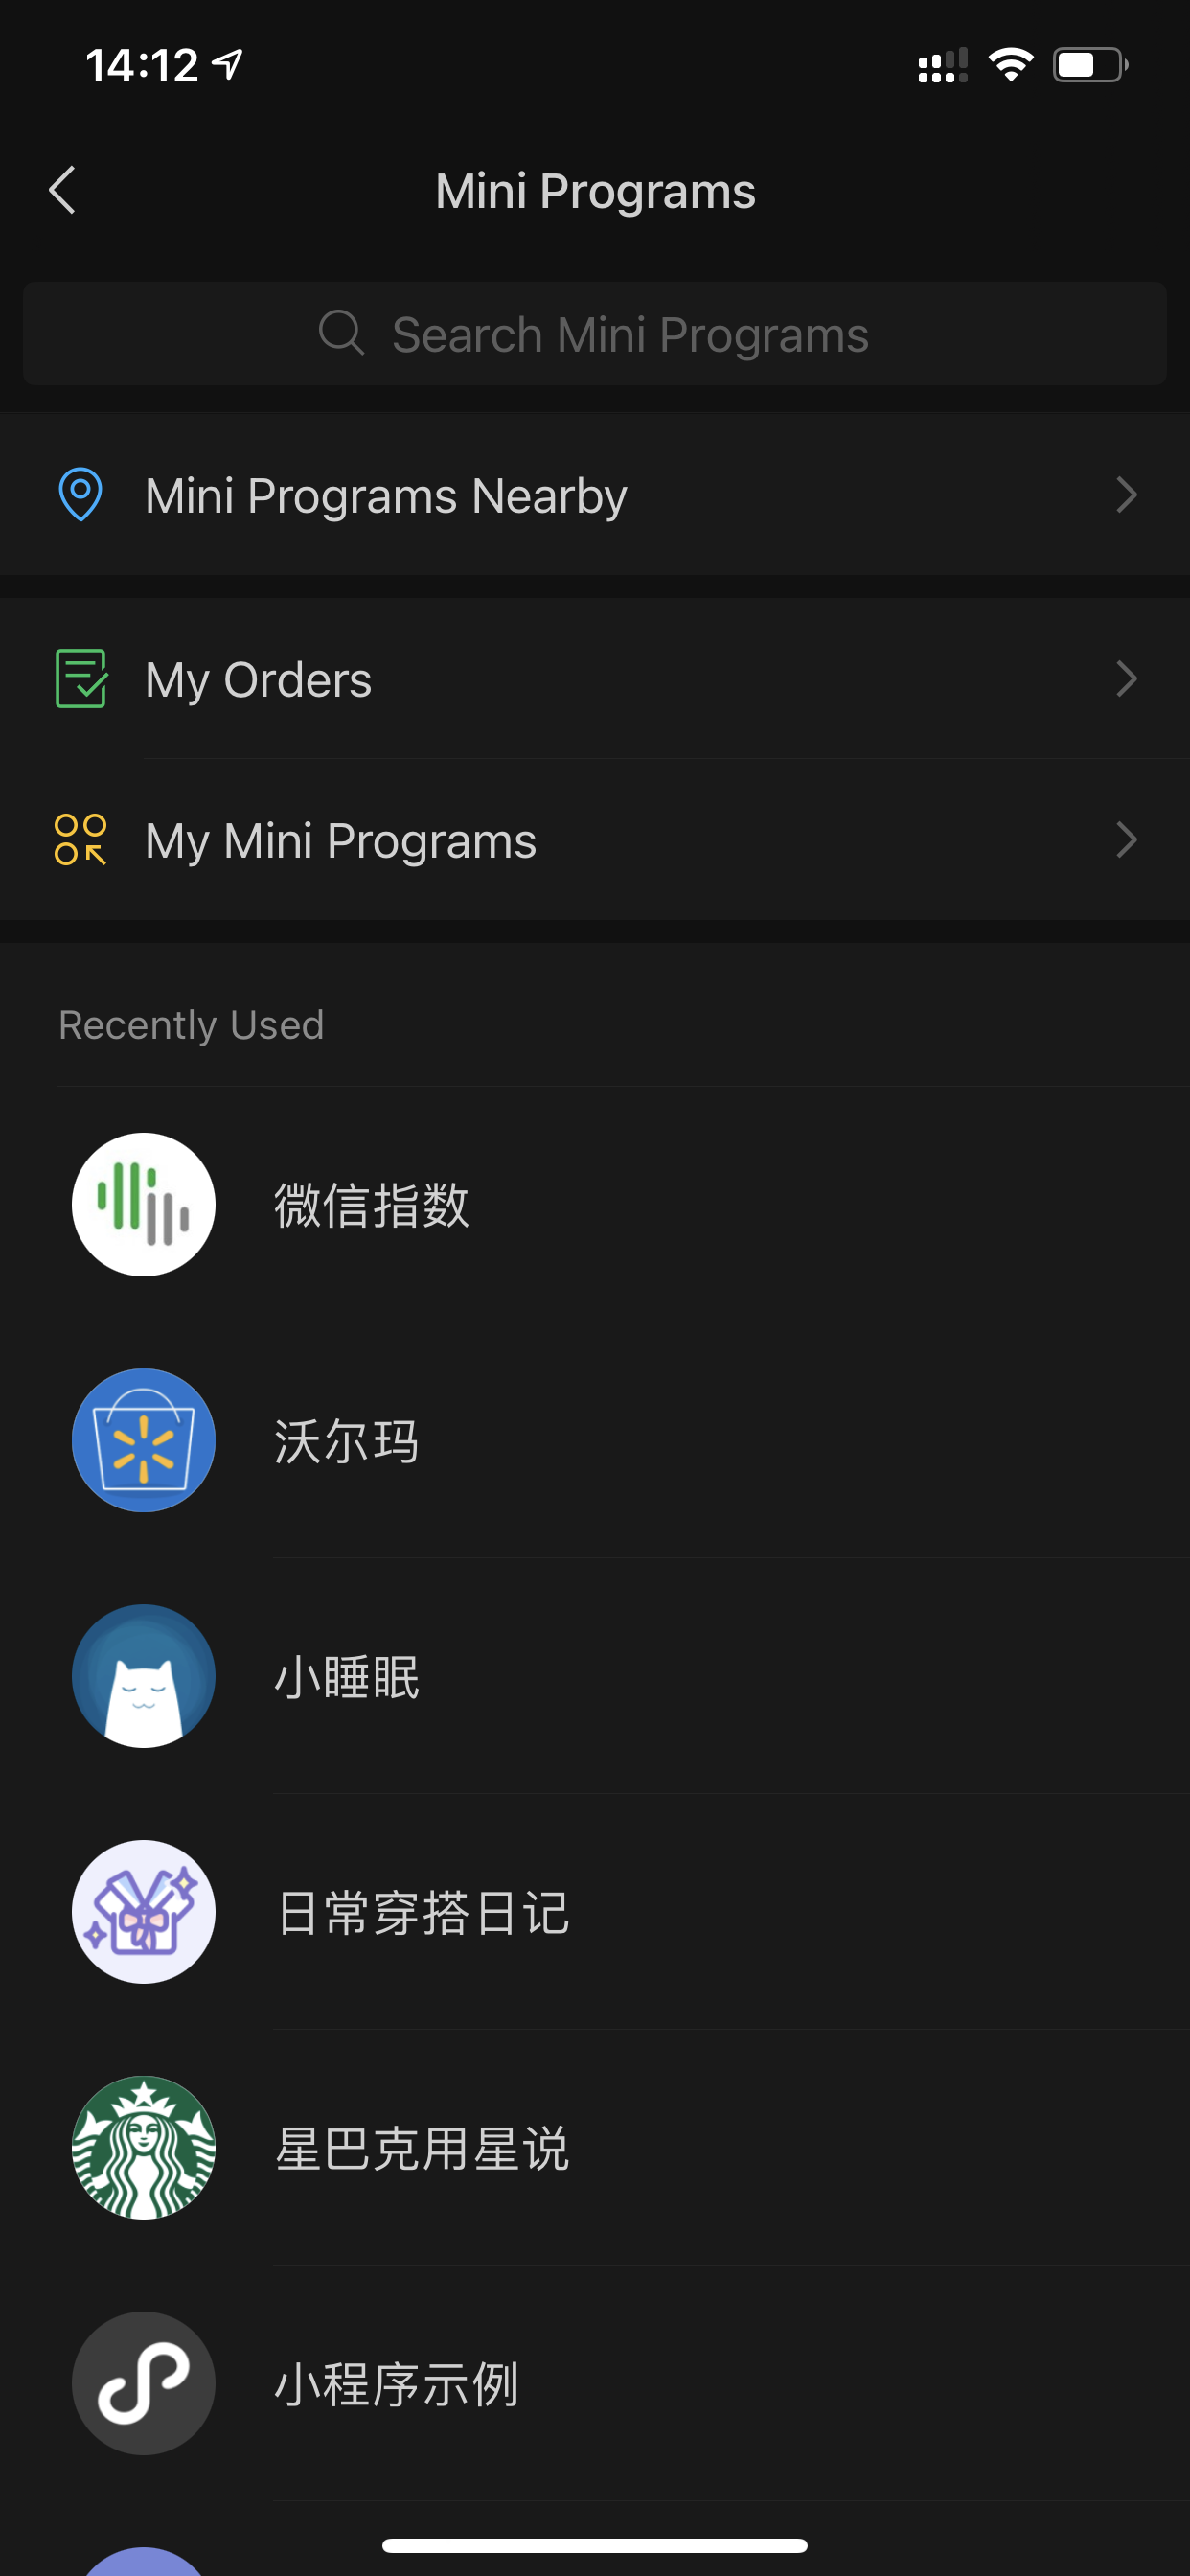 Elenco di mini app lanciate di recente nella superapp WeChat.